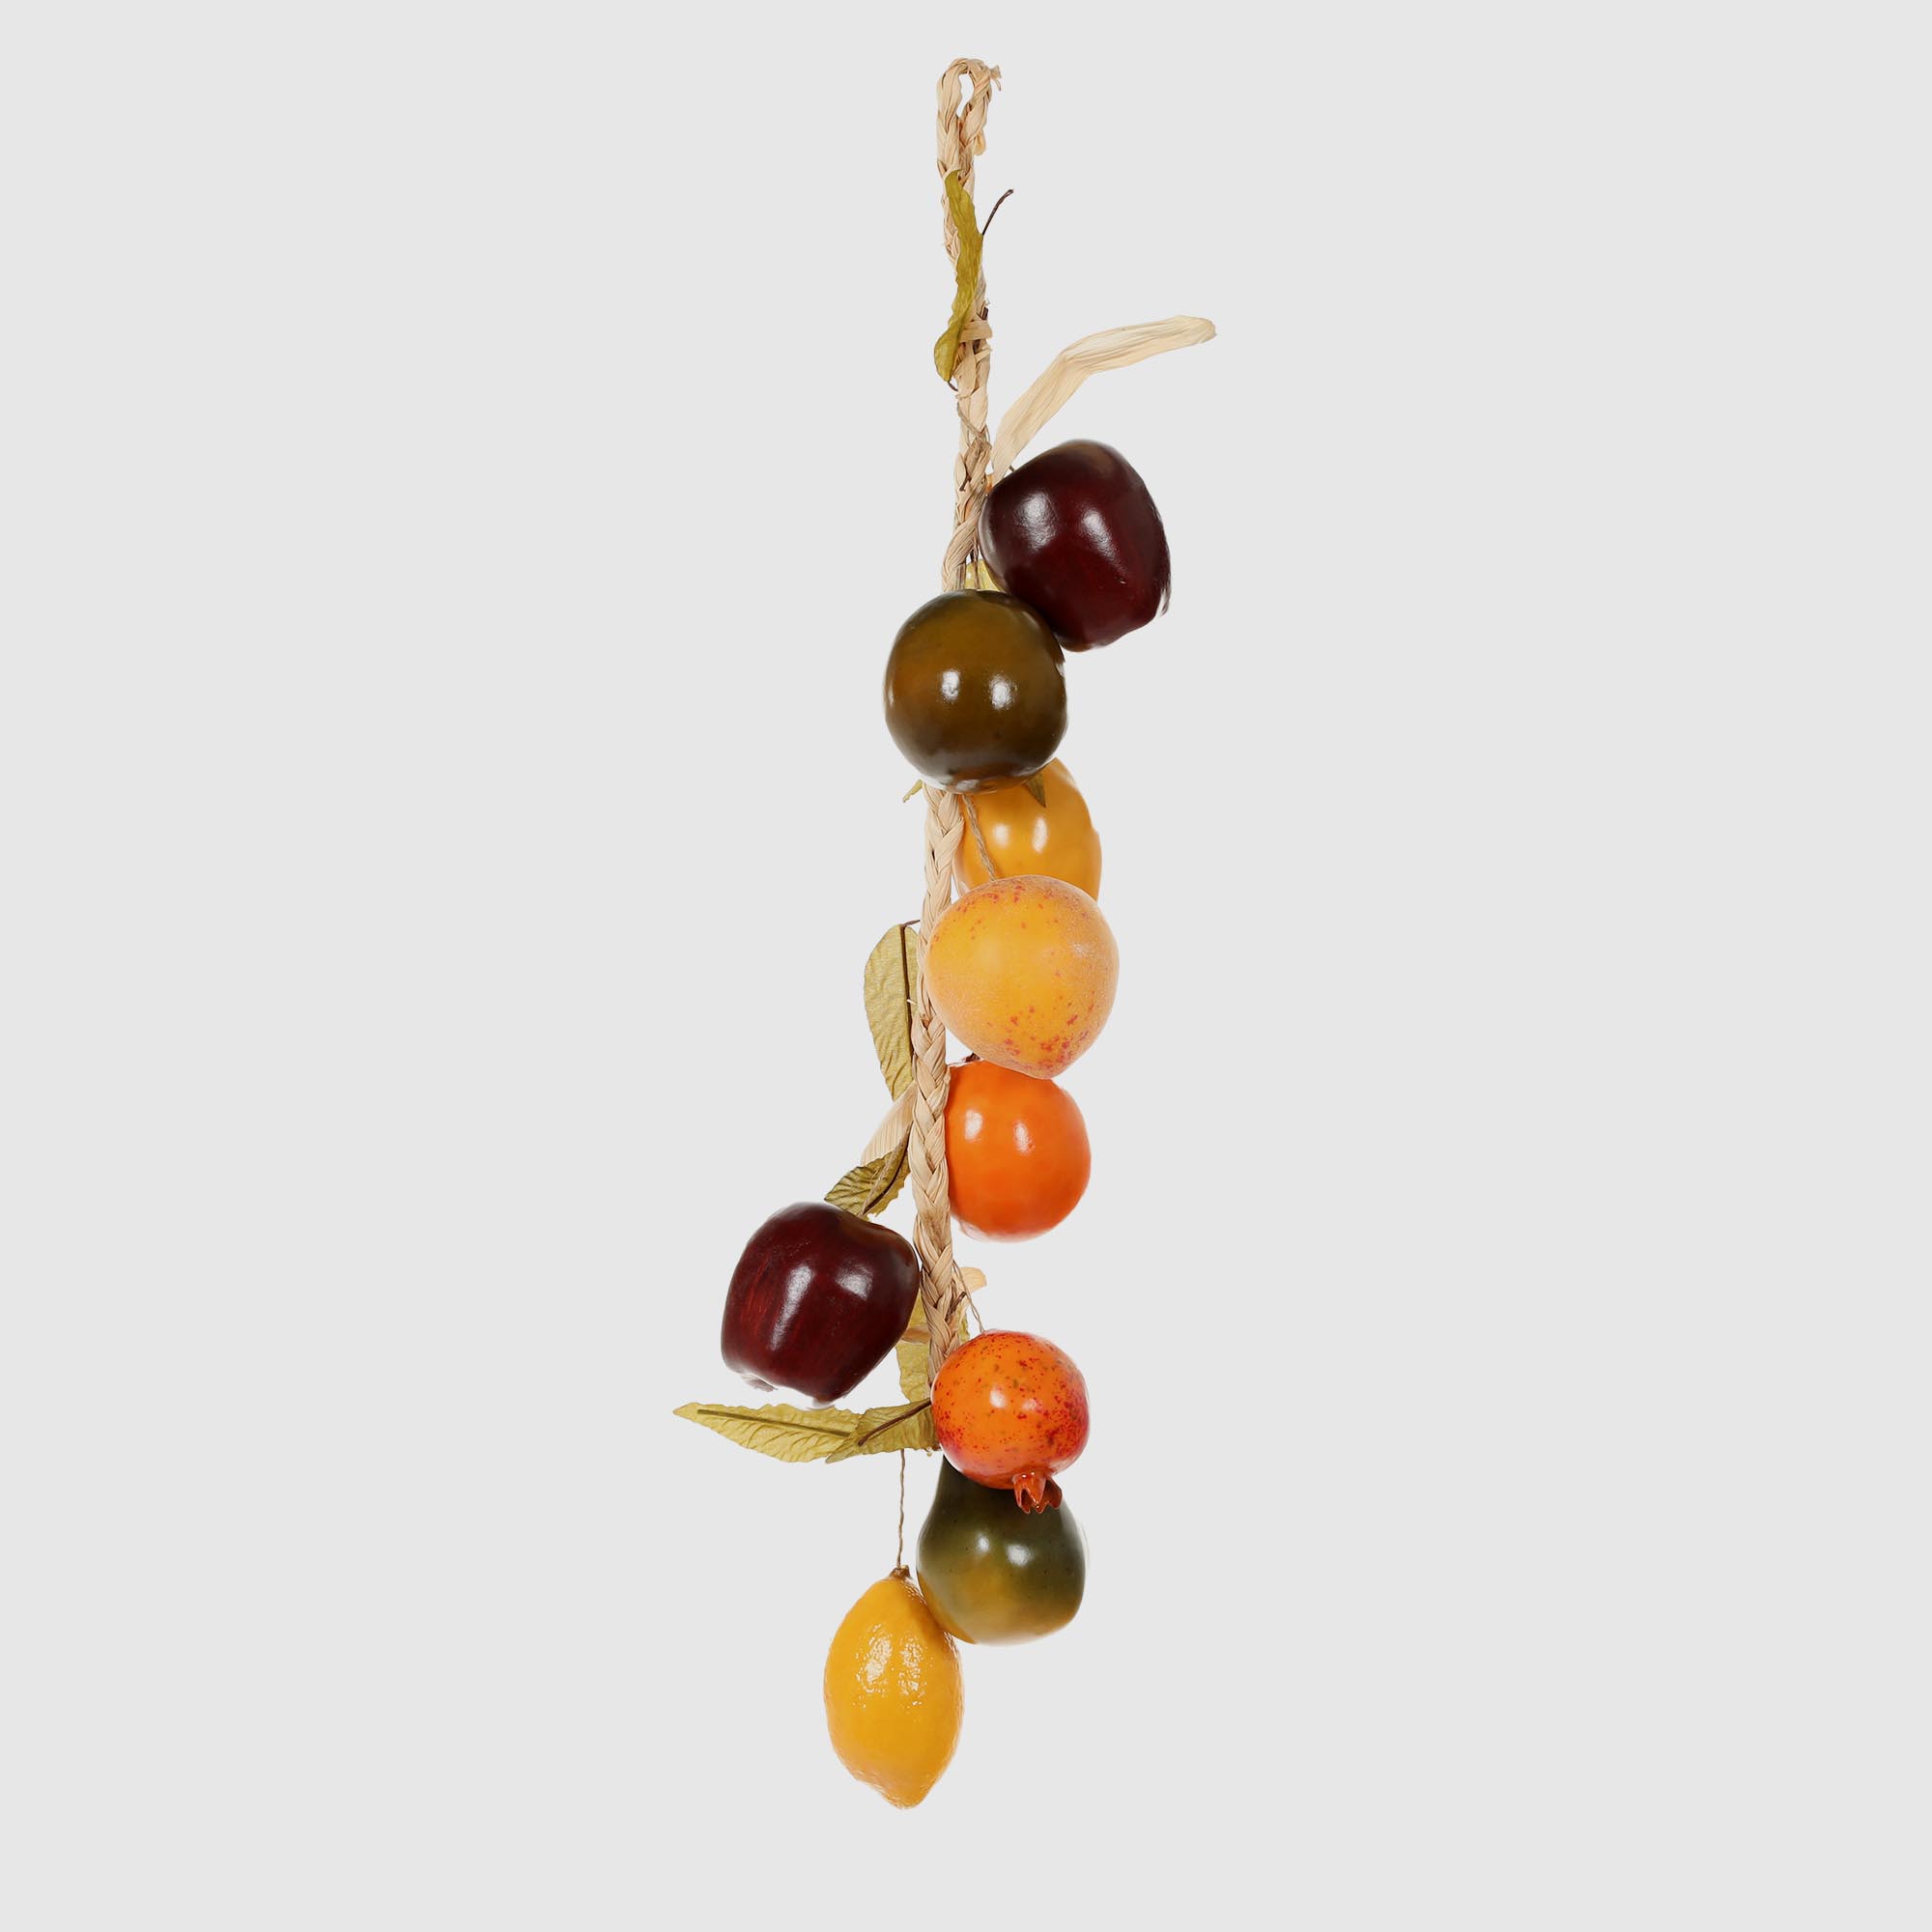 Связка фруктов Конэко-О 94213 62 см связка перца искусственная конэко о 56 см